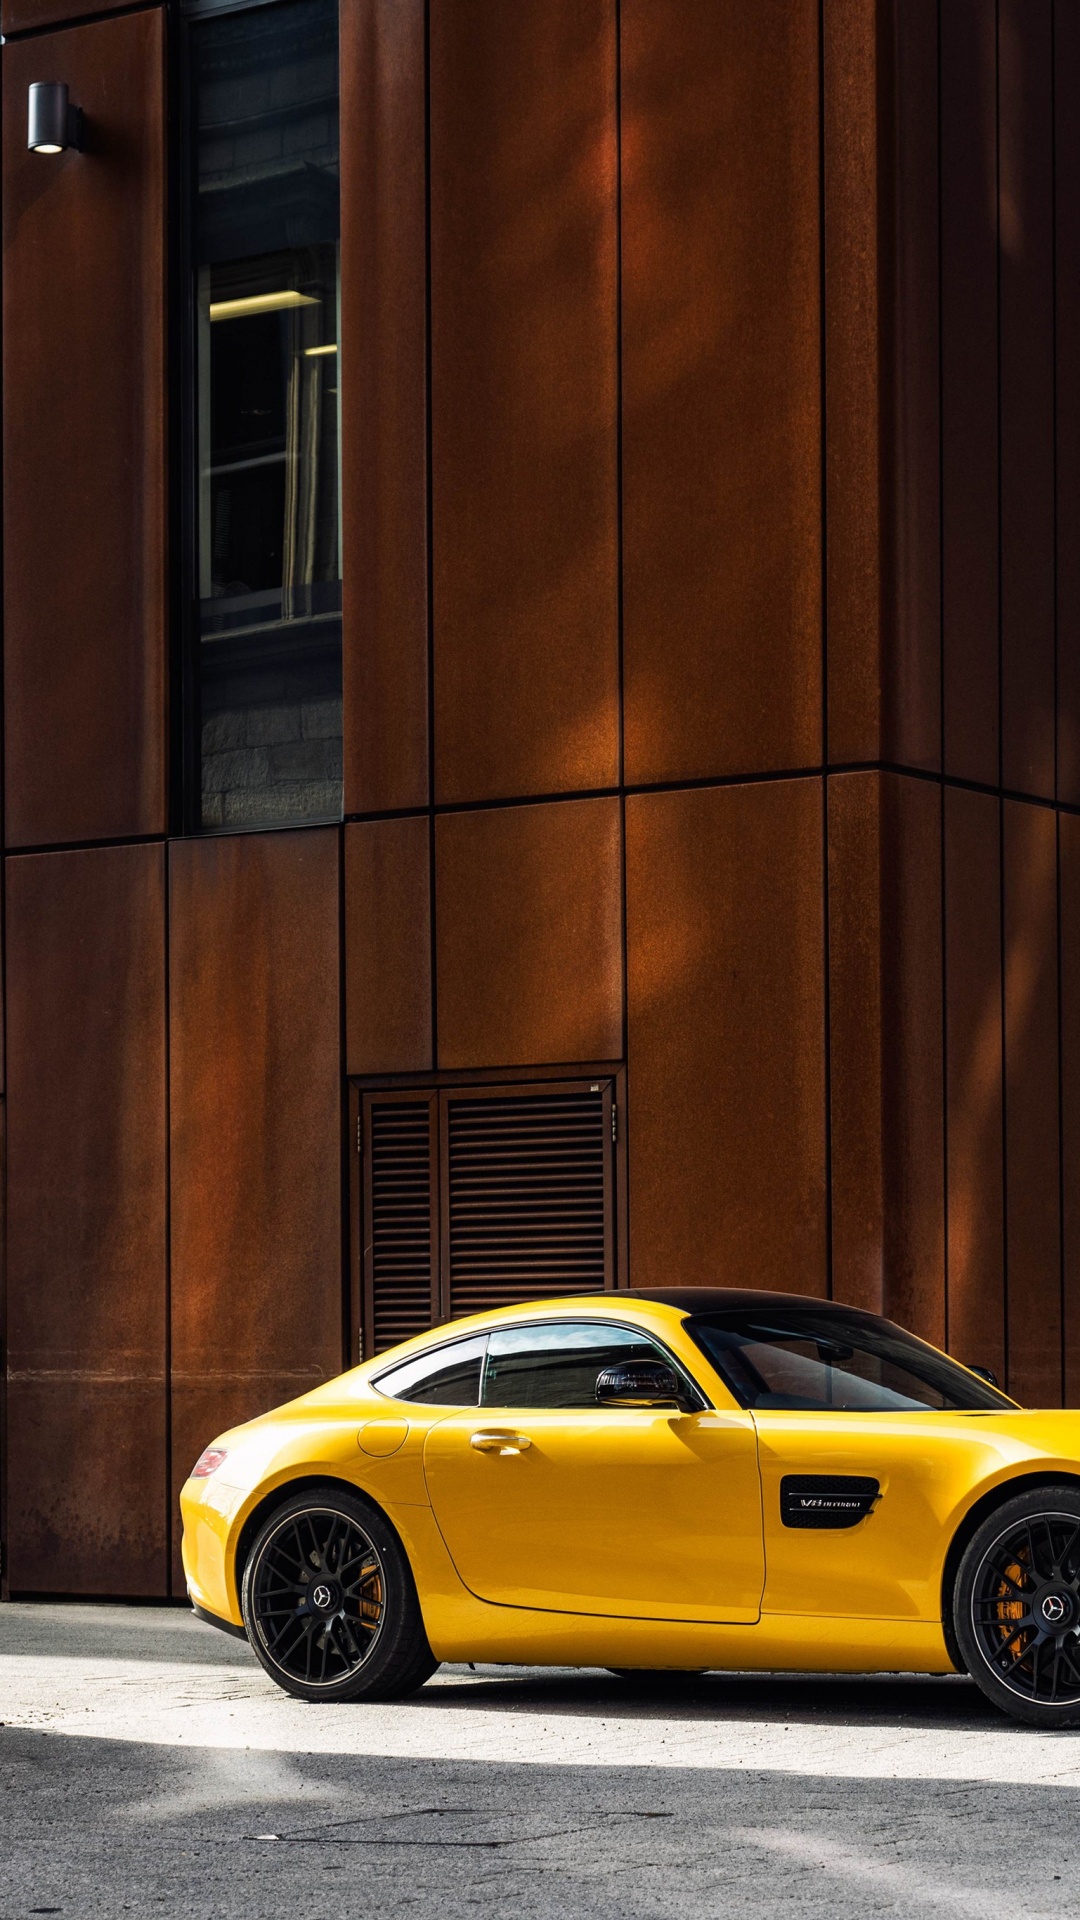 Porsche 911 Amarillo Estacionado Junto al Edificio de Hormigón Marrón Durante el Día. Wallpaper in 1080x1920 Resolution